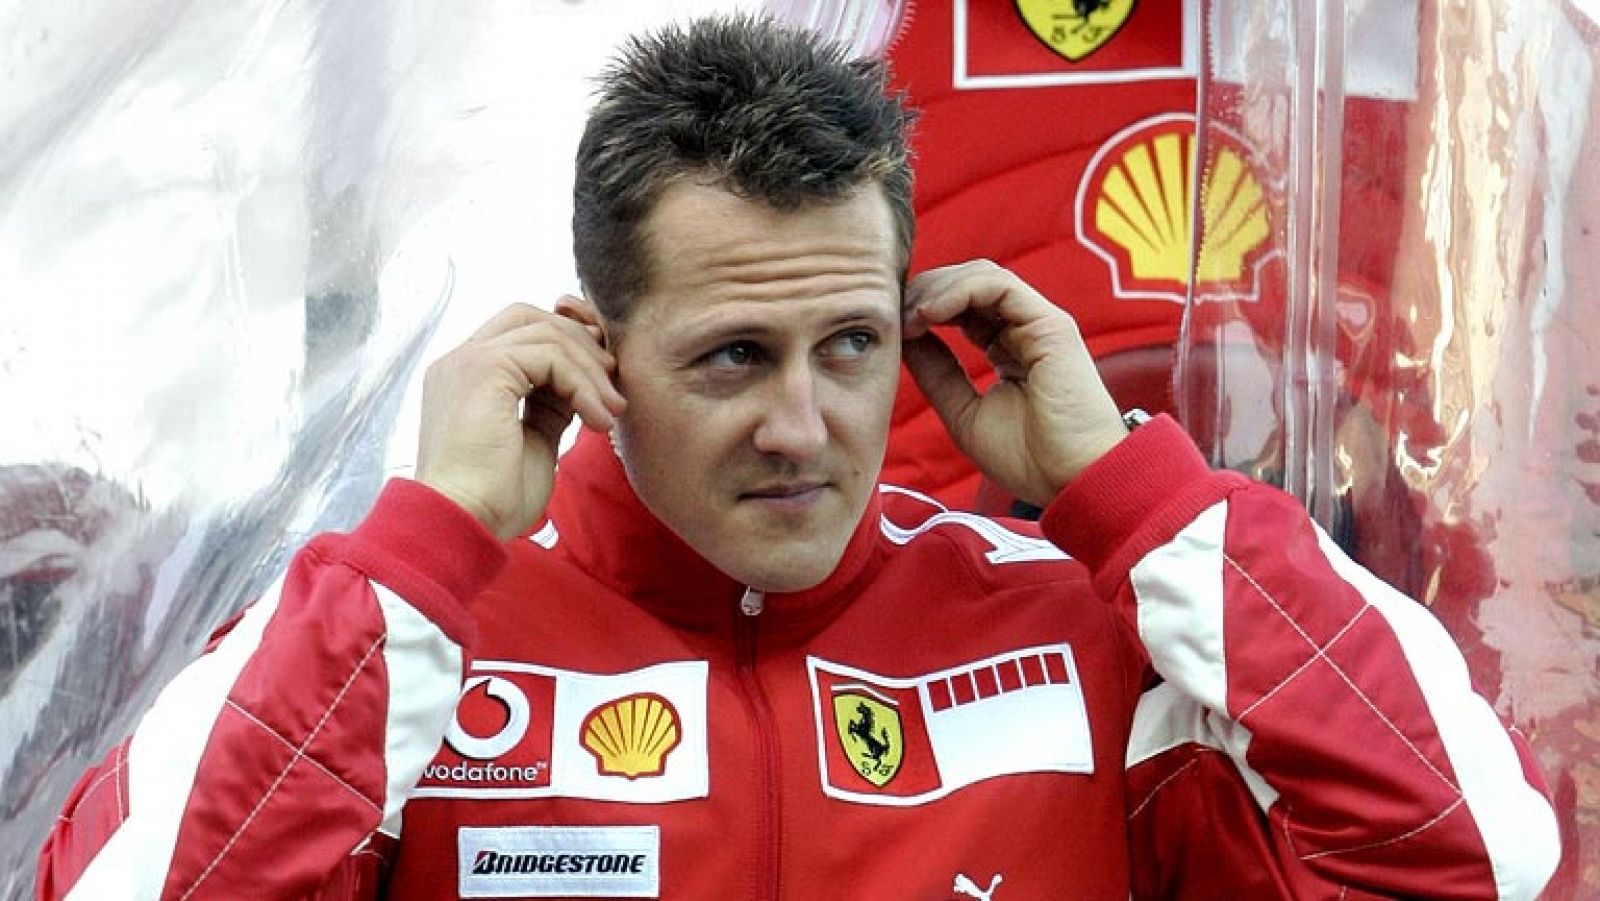 El equipo médico del hospital de Grenoble ha comenzado el proceso para sacar del coma inducido a Michael Schumacher, en el que se encuentra el expiloto alemán desde el accidente de esquí que sufrió el pasado 29 de diciembre, según ha confirmado.